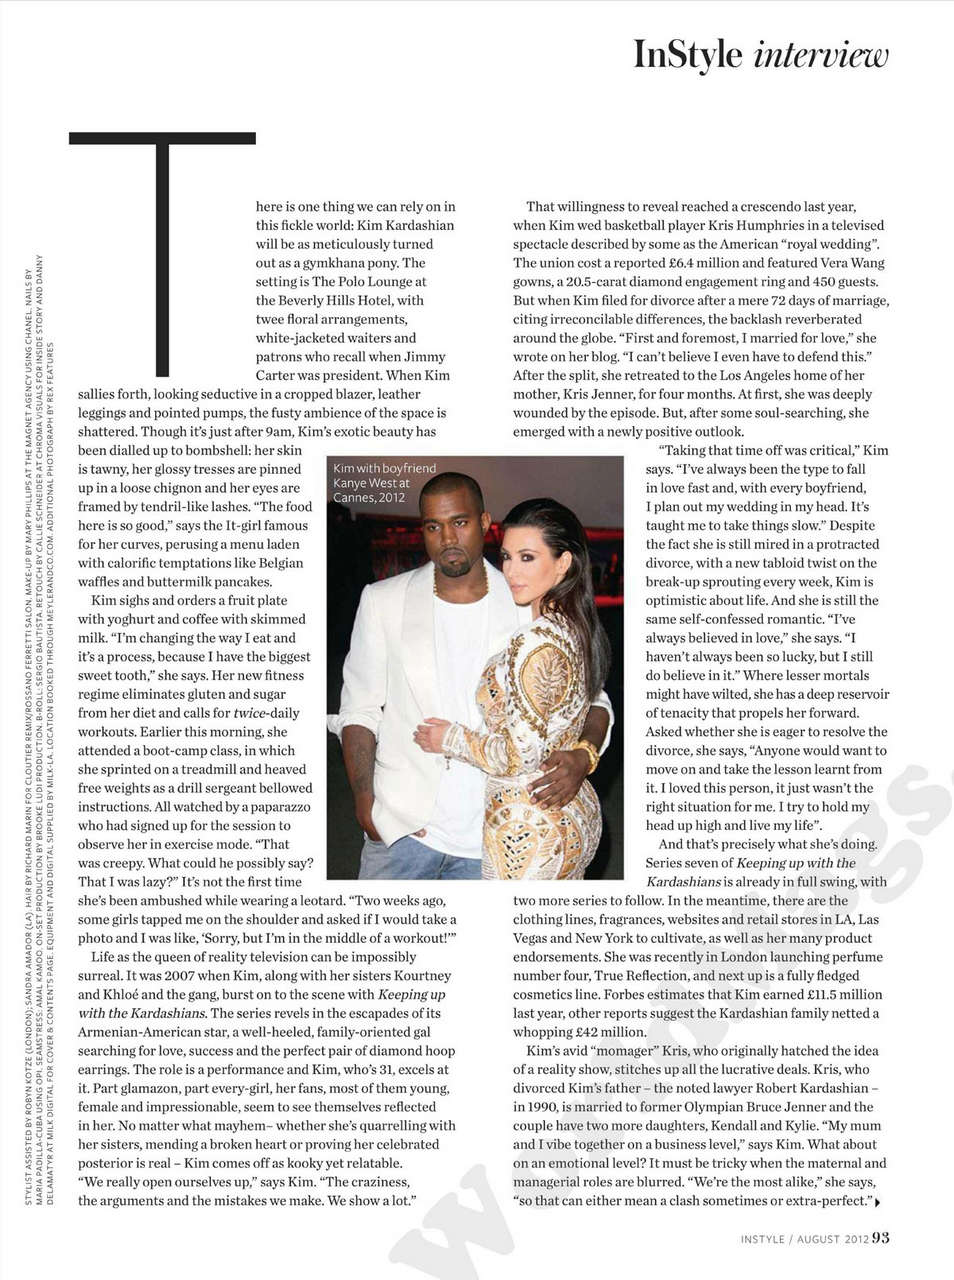 Kim Kardashian Instyle Magazine Uk August 2012 Issue